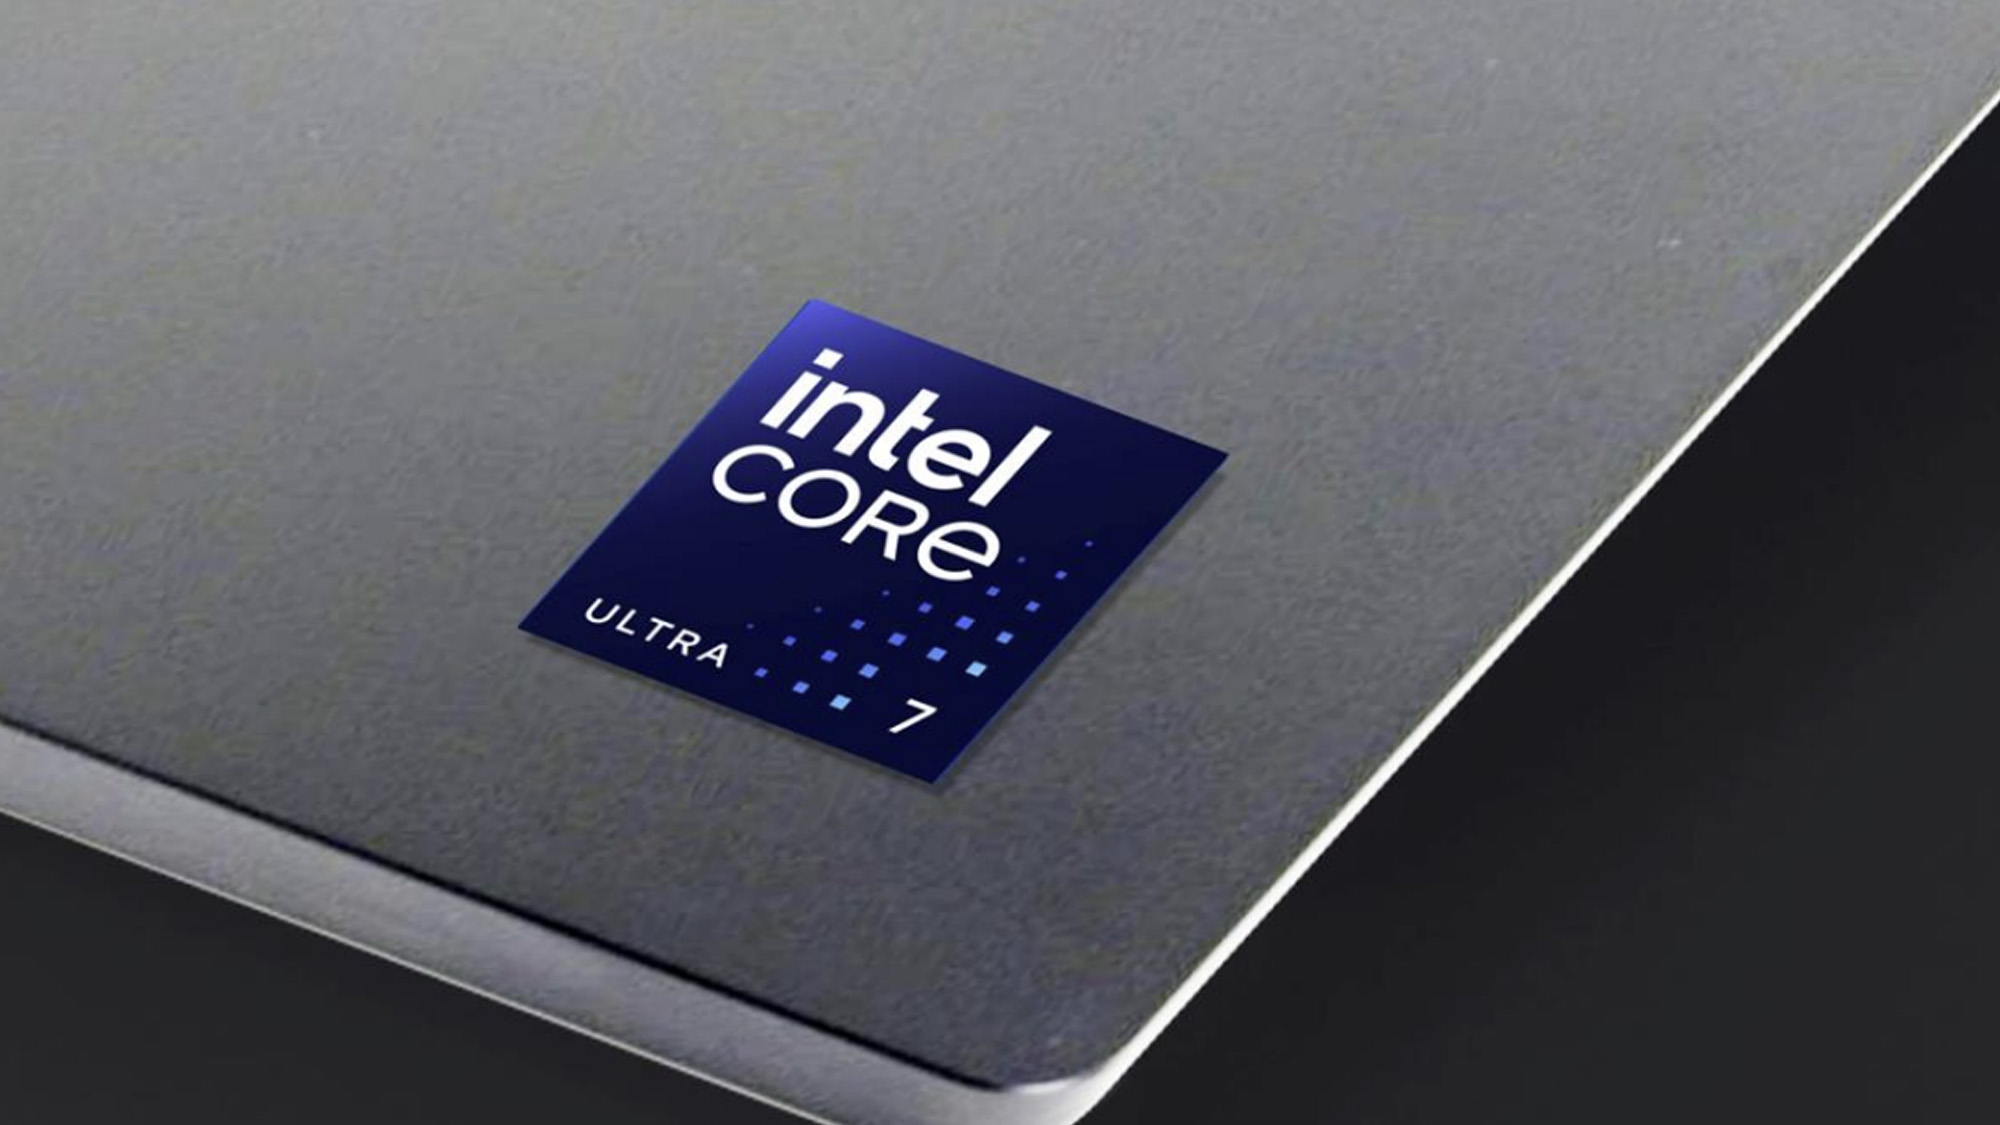 Les processeurs Meteor Lake d'Intel utiliseront l'IA pour prolonger la durée de vie de la batterie de votre ordinateur portable